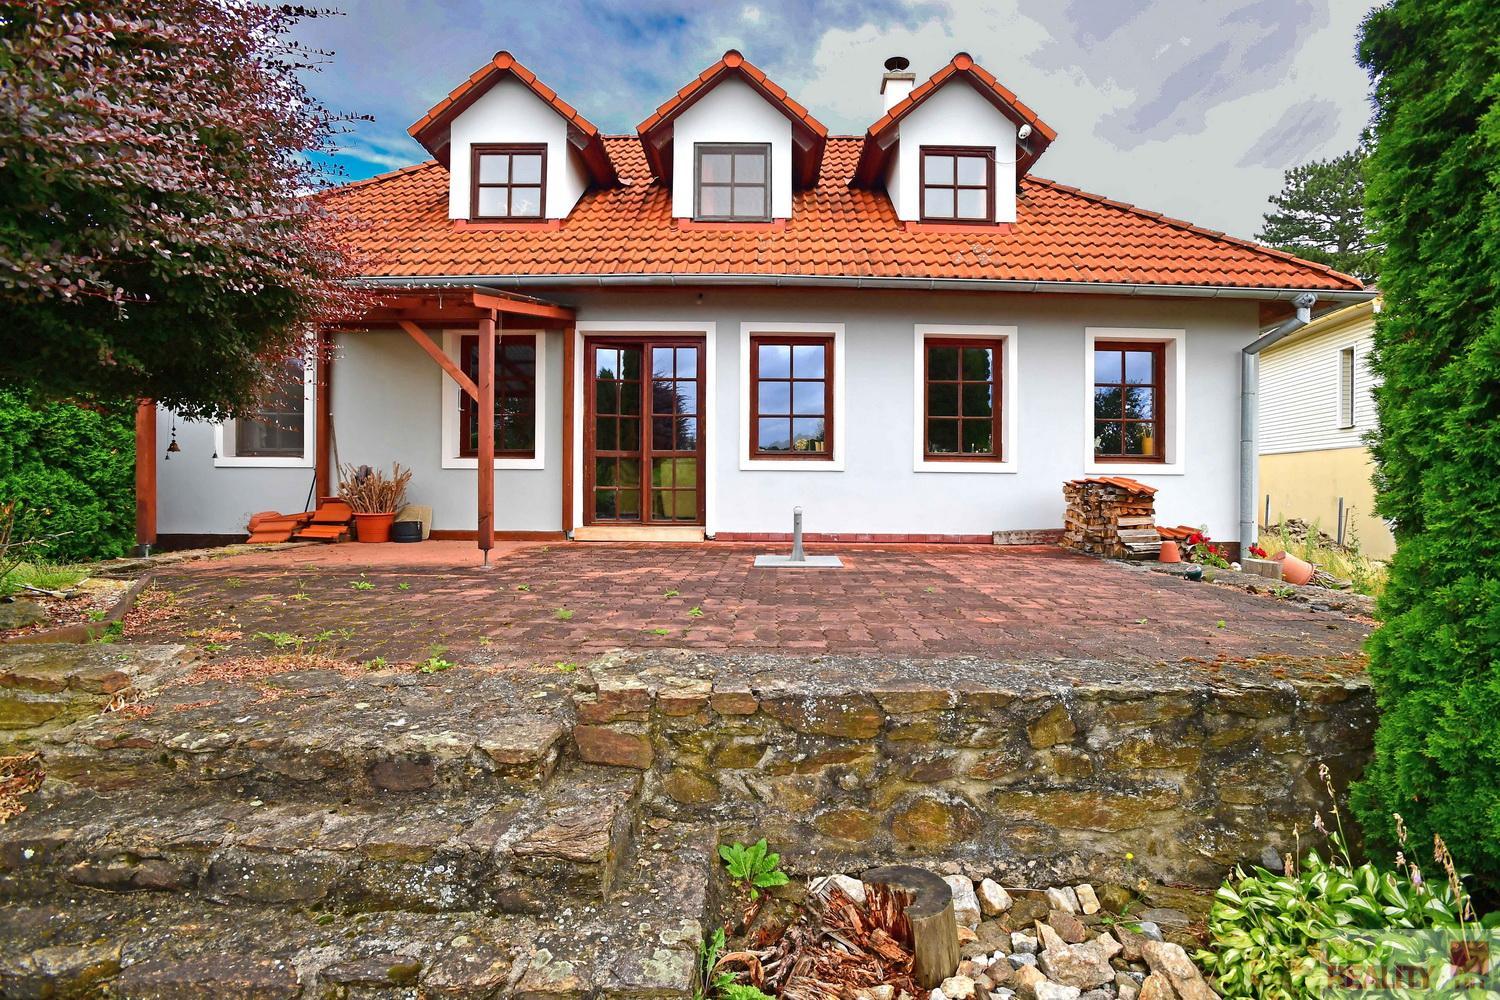 Prodej rodinného domu 4+kk, zastavěna plocha 145 m2, zahrada 1146 m2, Křelovice  v kraji Vysočina.